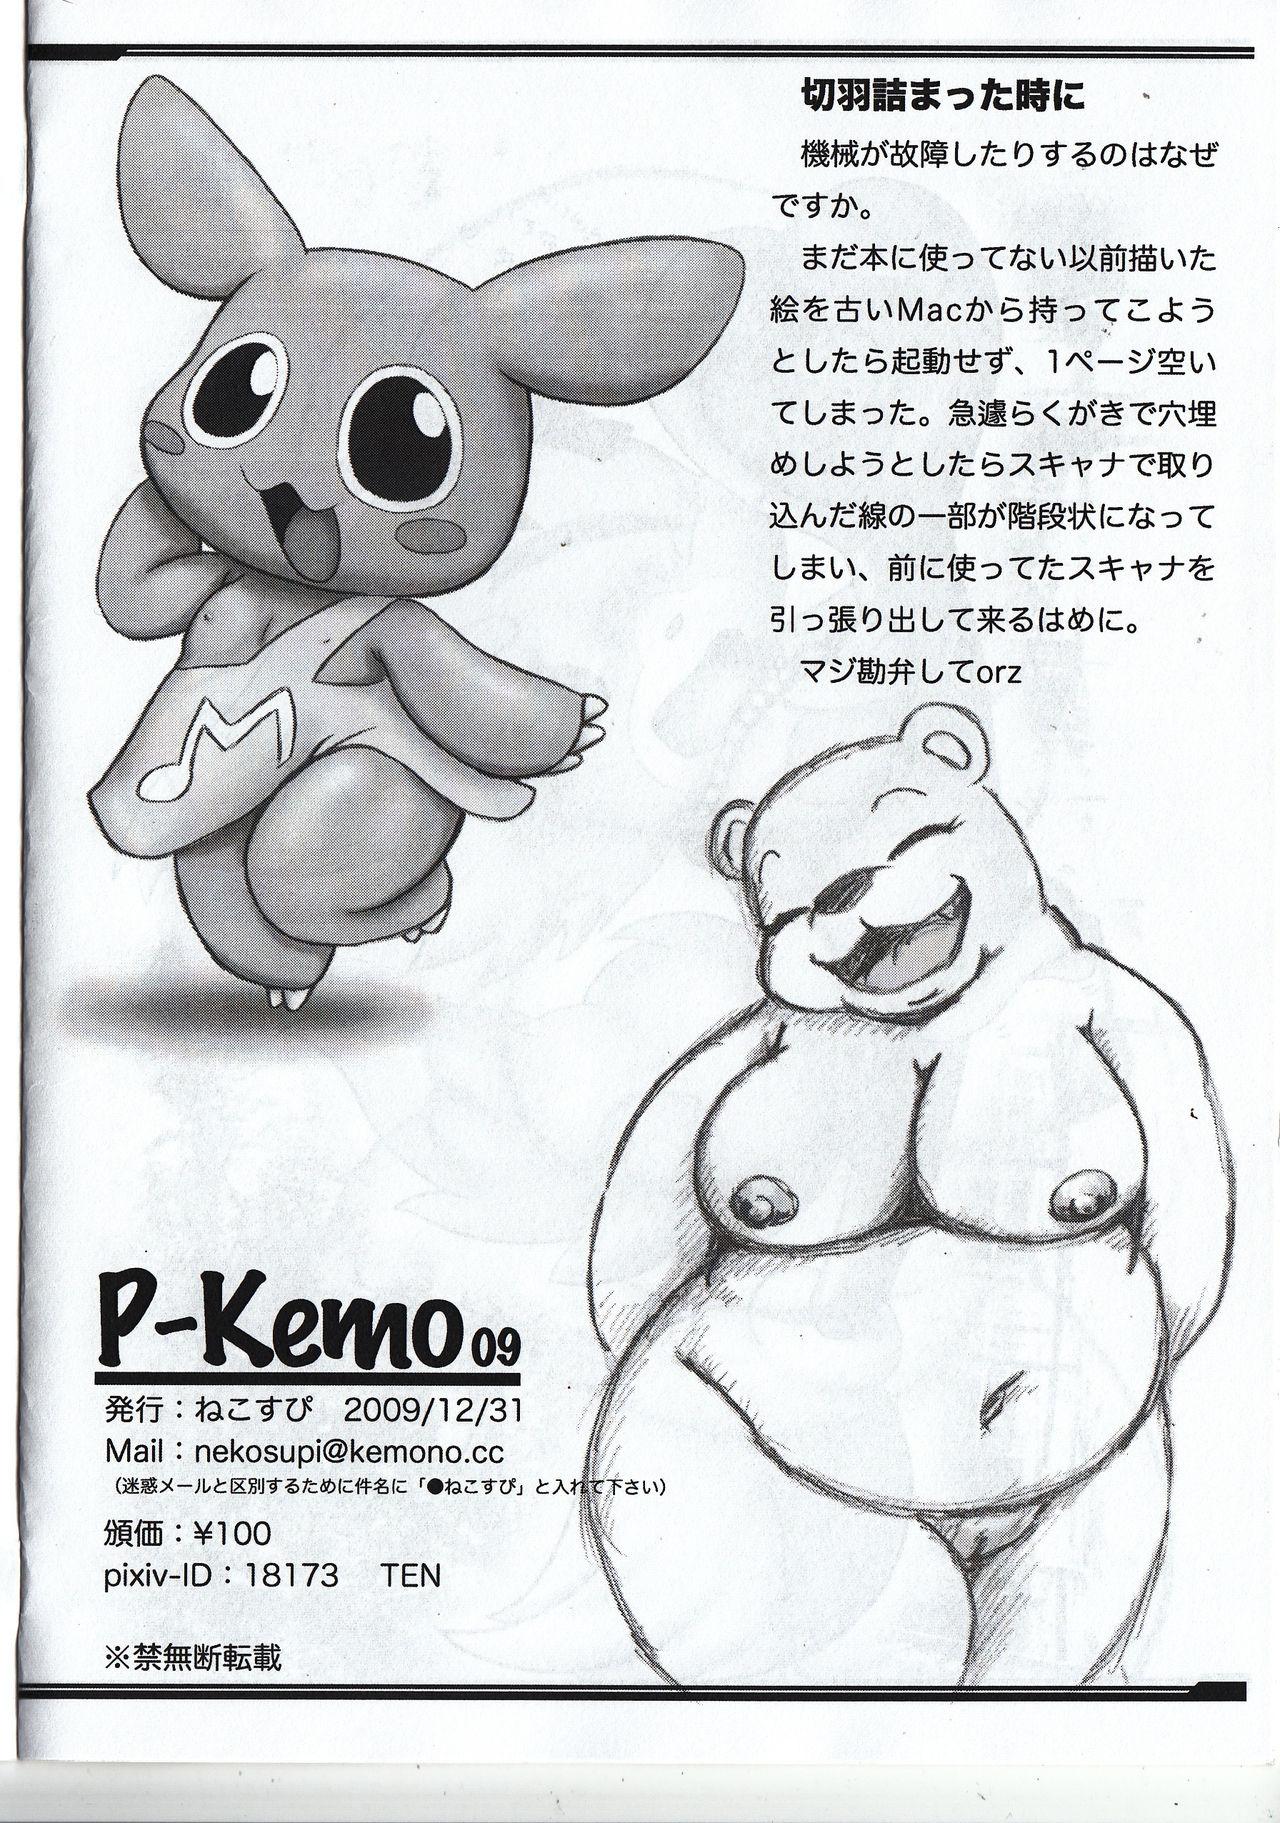 Scissoring P-Kemo09 - Pokemon Kirby Animal crossing Pervert - Page 13